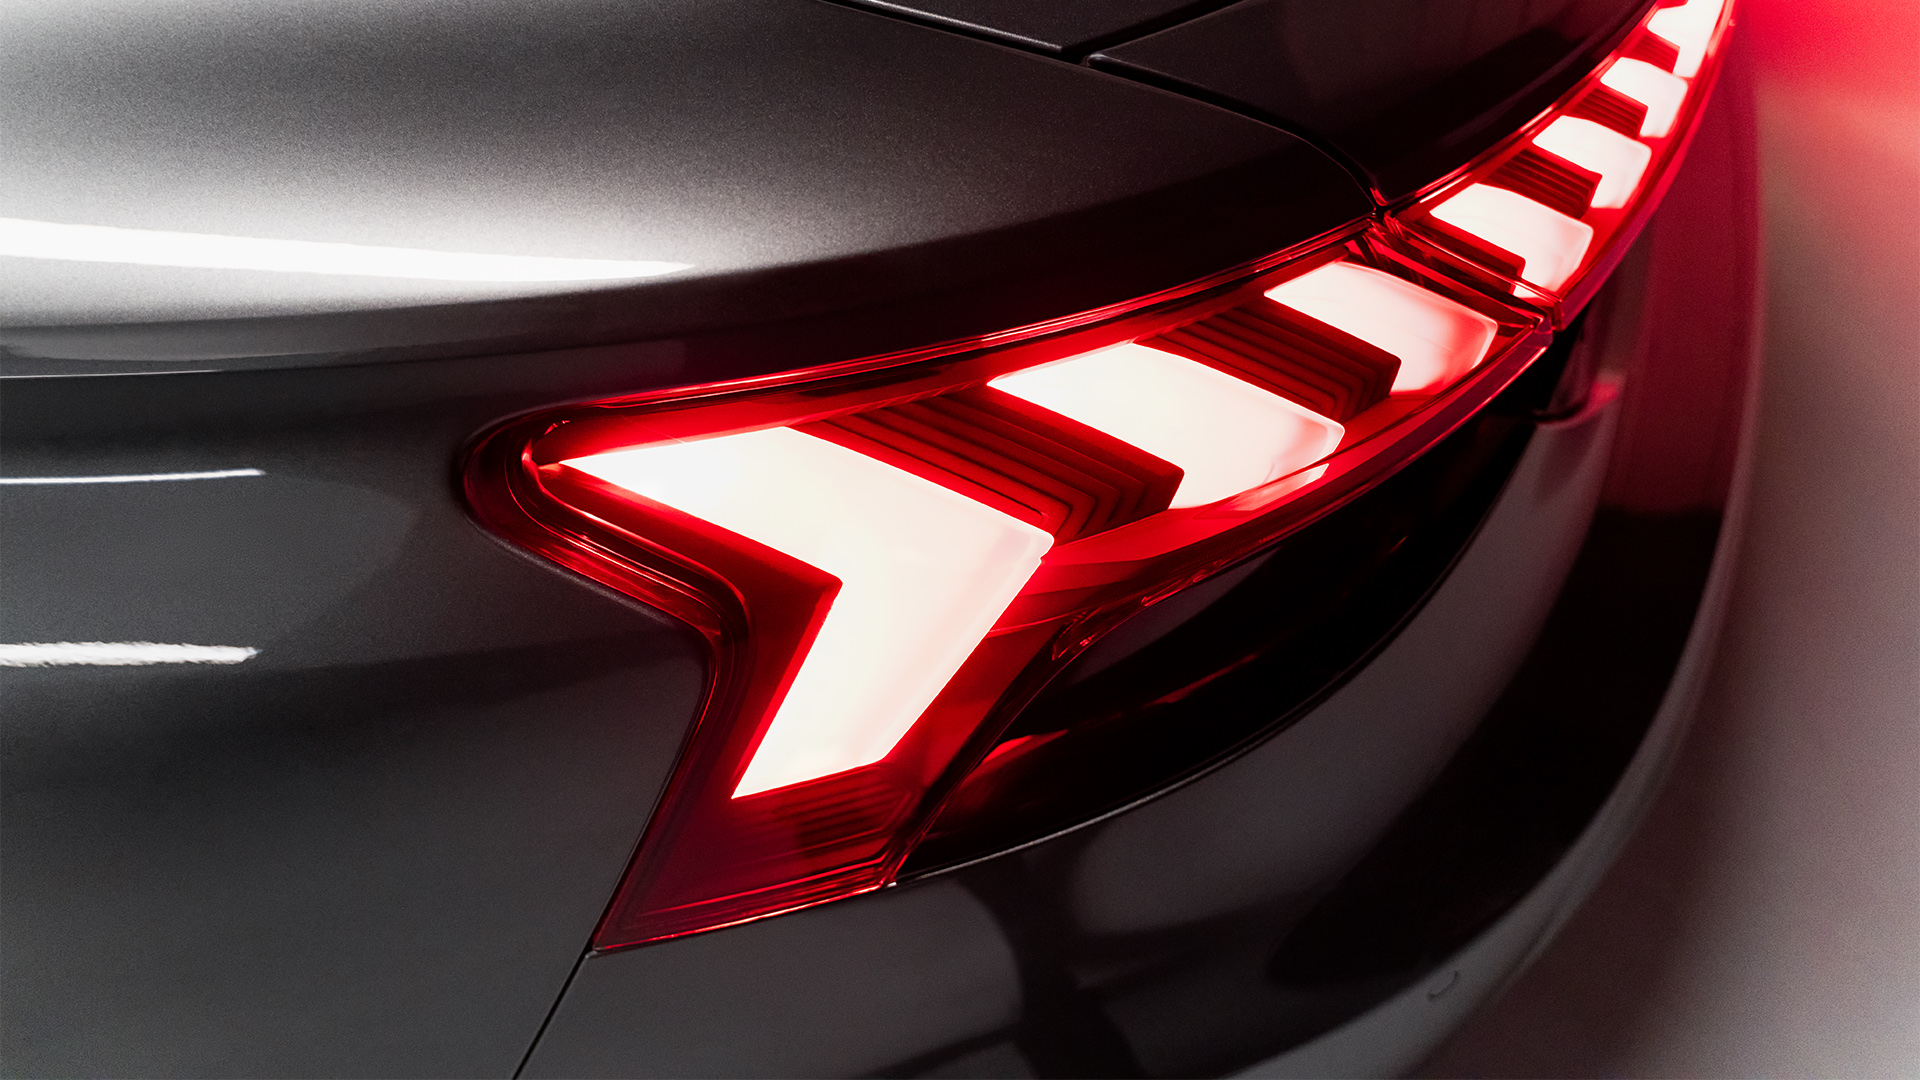 The Audi e-tron GT quattro